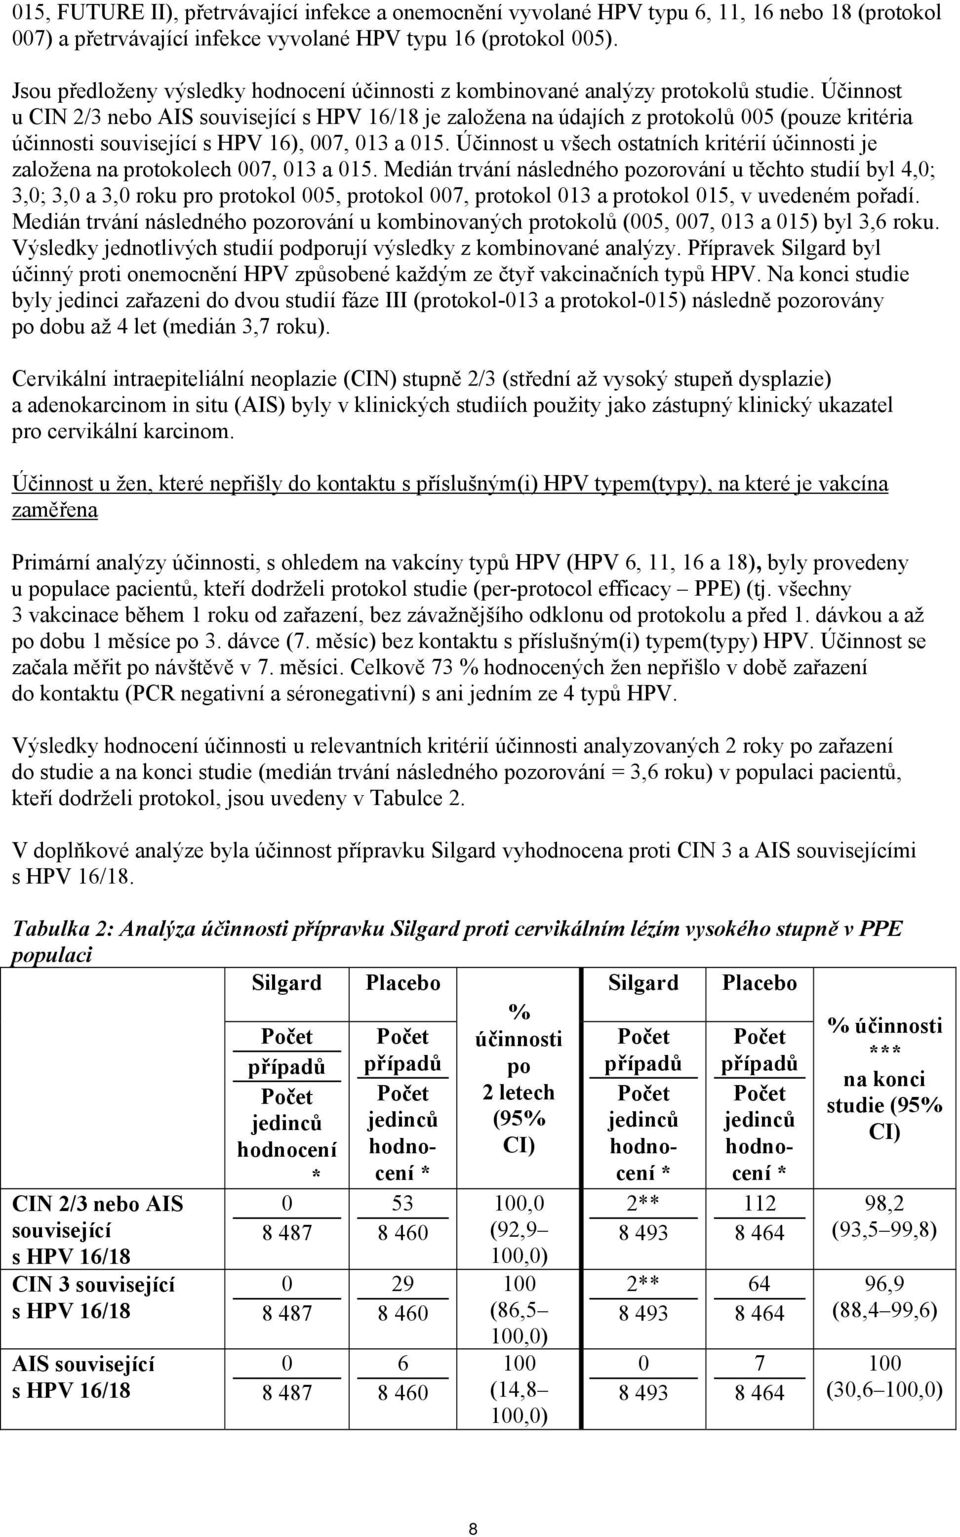 Účinnost u CIN 2/3 nebo AIS související s HPV 16/18 je založena na údajích z protokolů 005 (pouze kritéria účinnosti související s HPV 16), 007, 013 a 015.